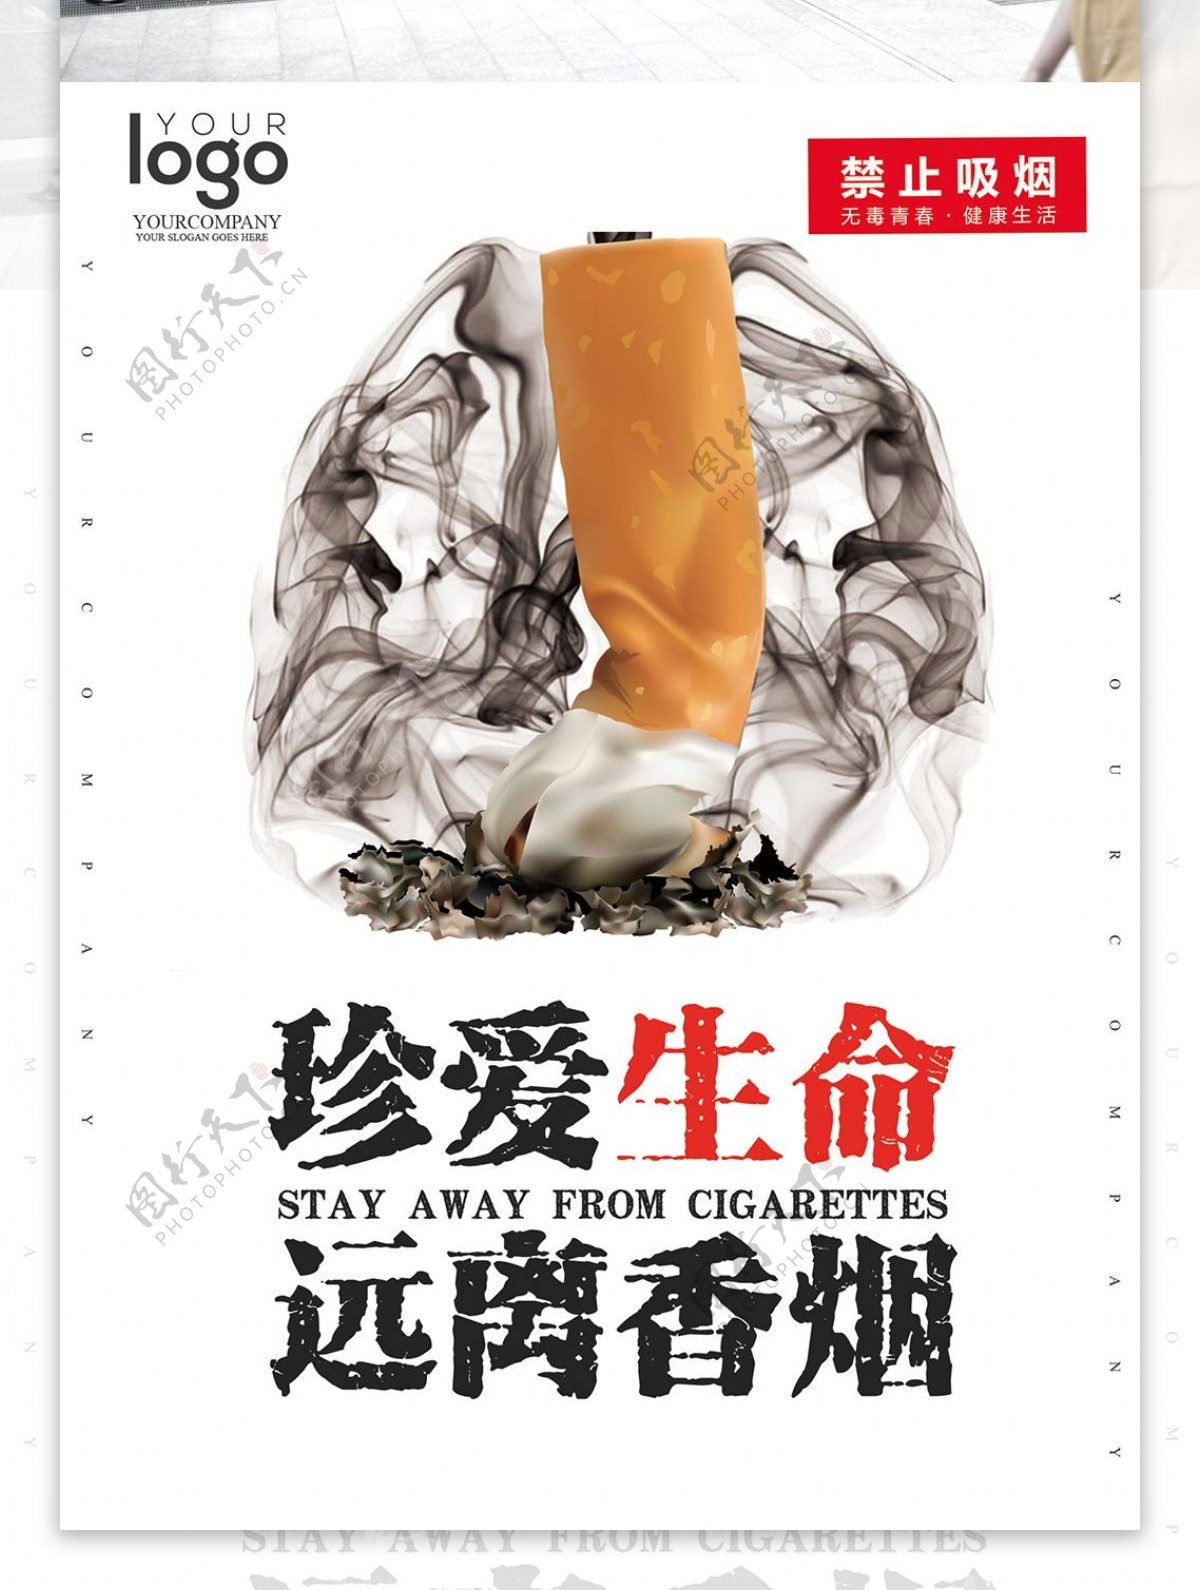 简约世界无烟日公益海报